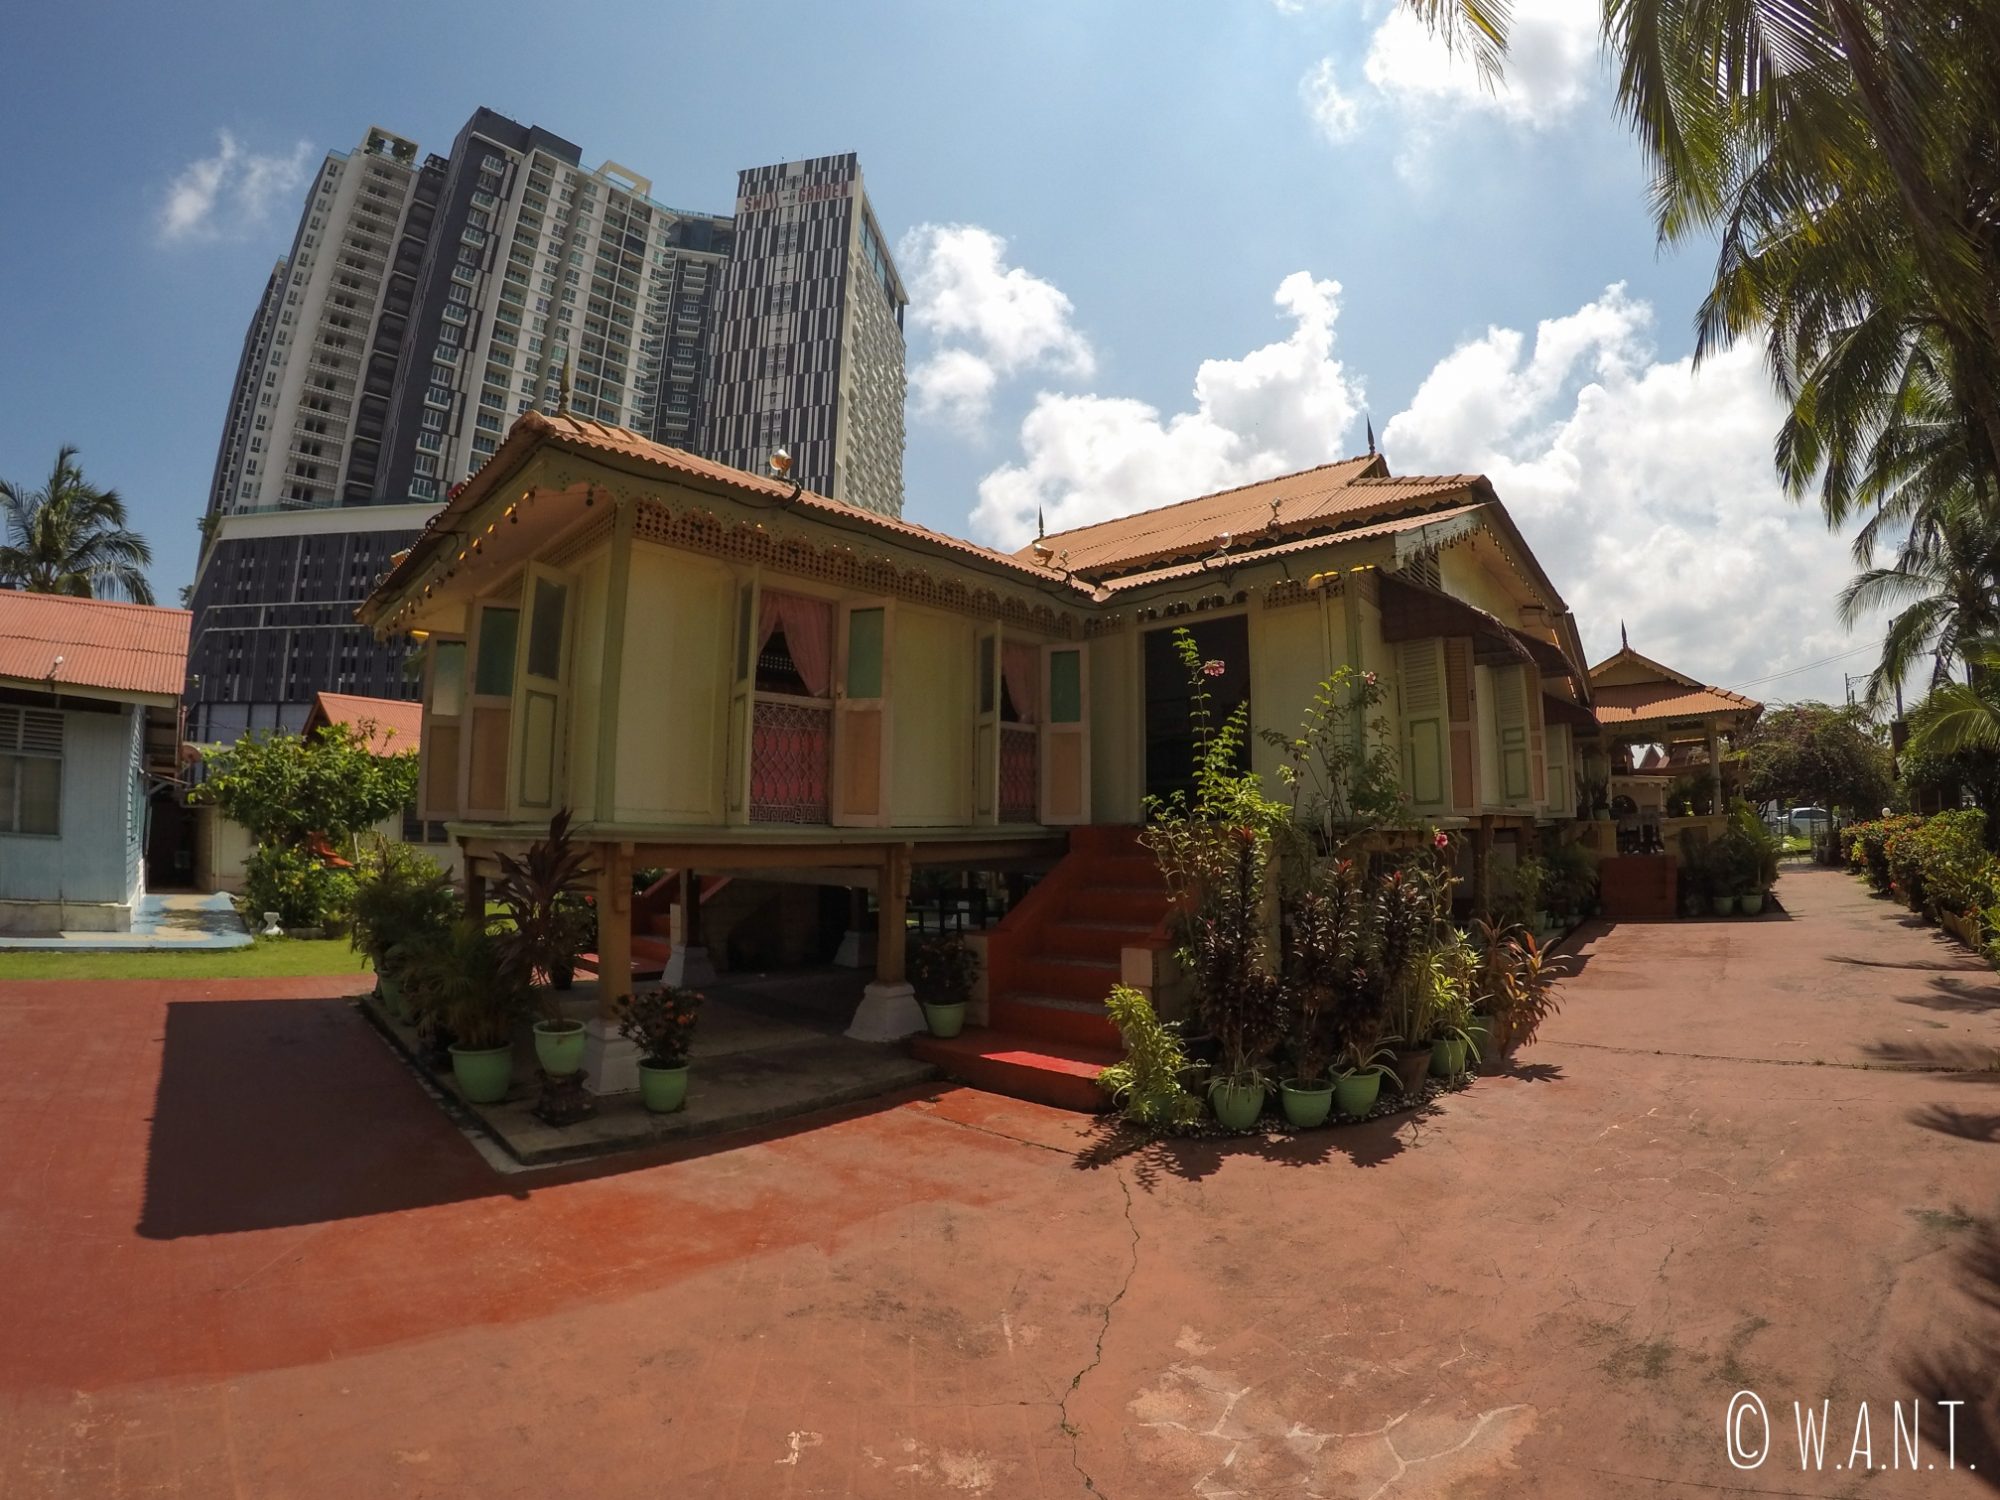 Le contraste est frappant entre la villa Sentosa, maison malaisienne, et les immeubles situés autour